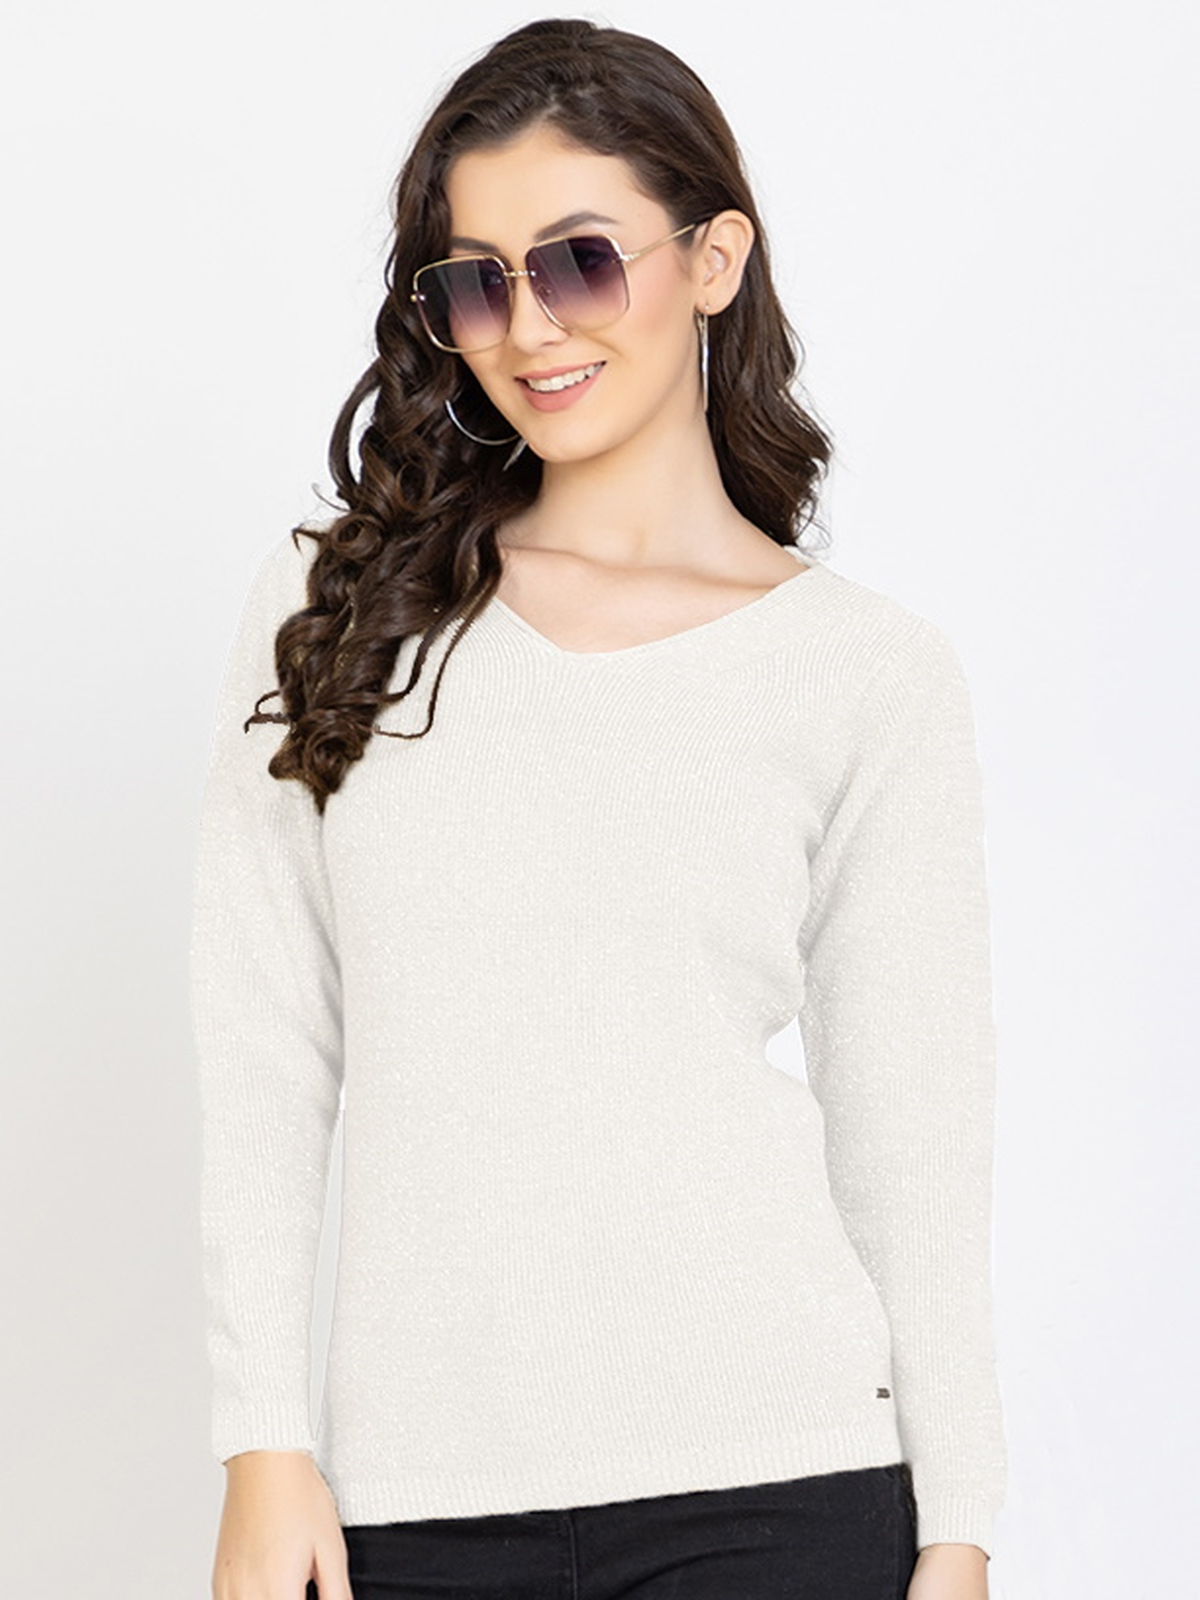 White Woolen V-Neck Self Design Sweater For Women - GODFREY